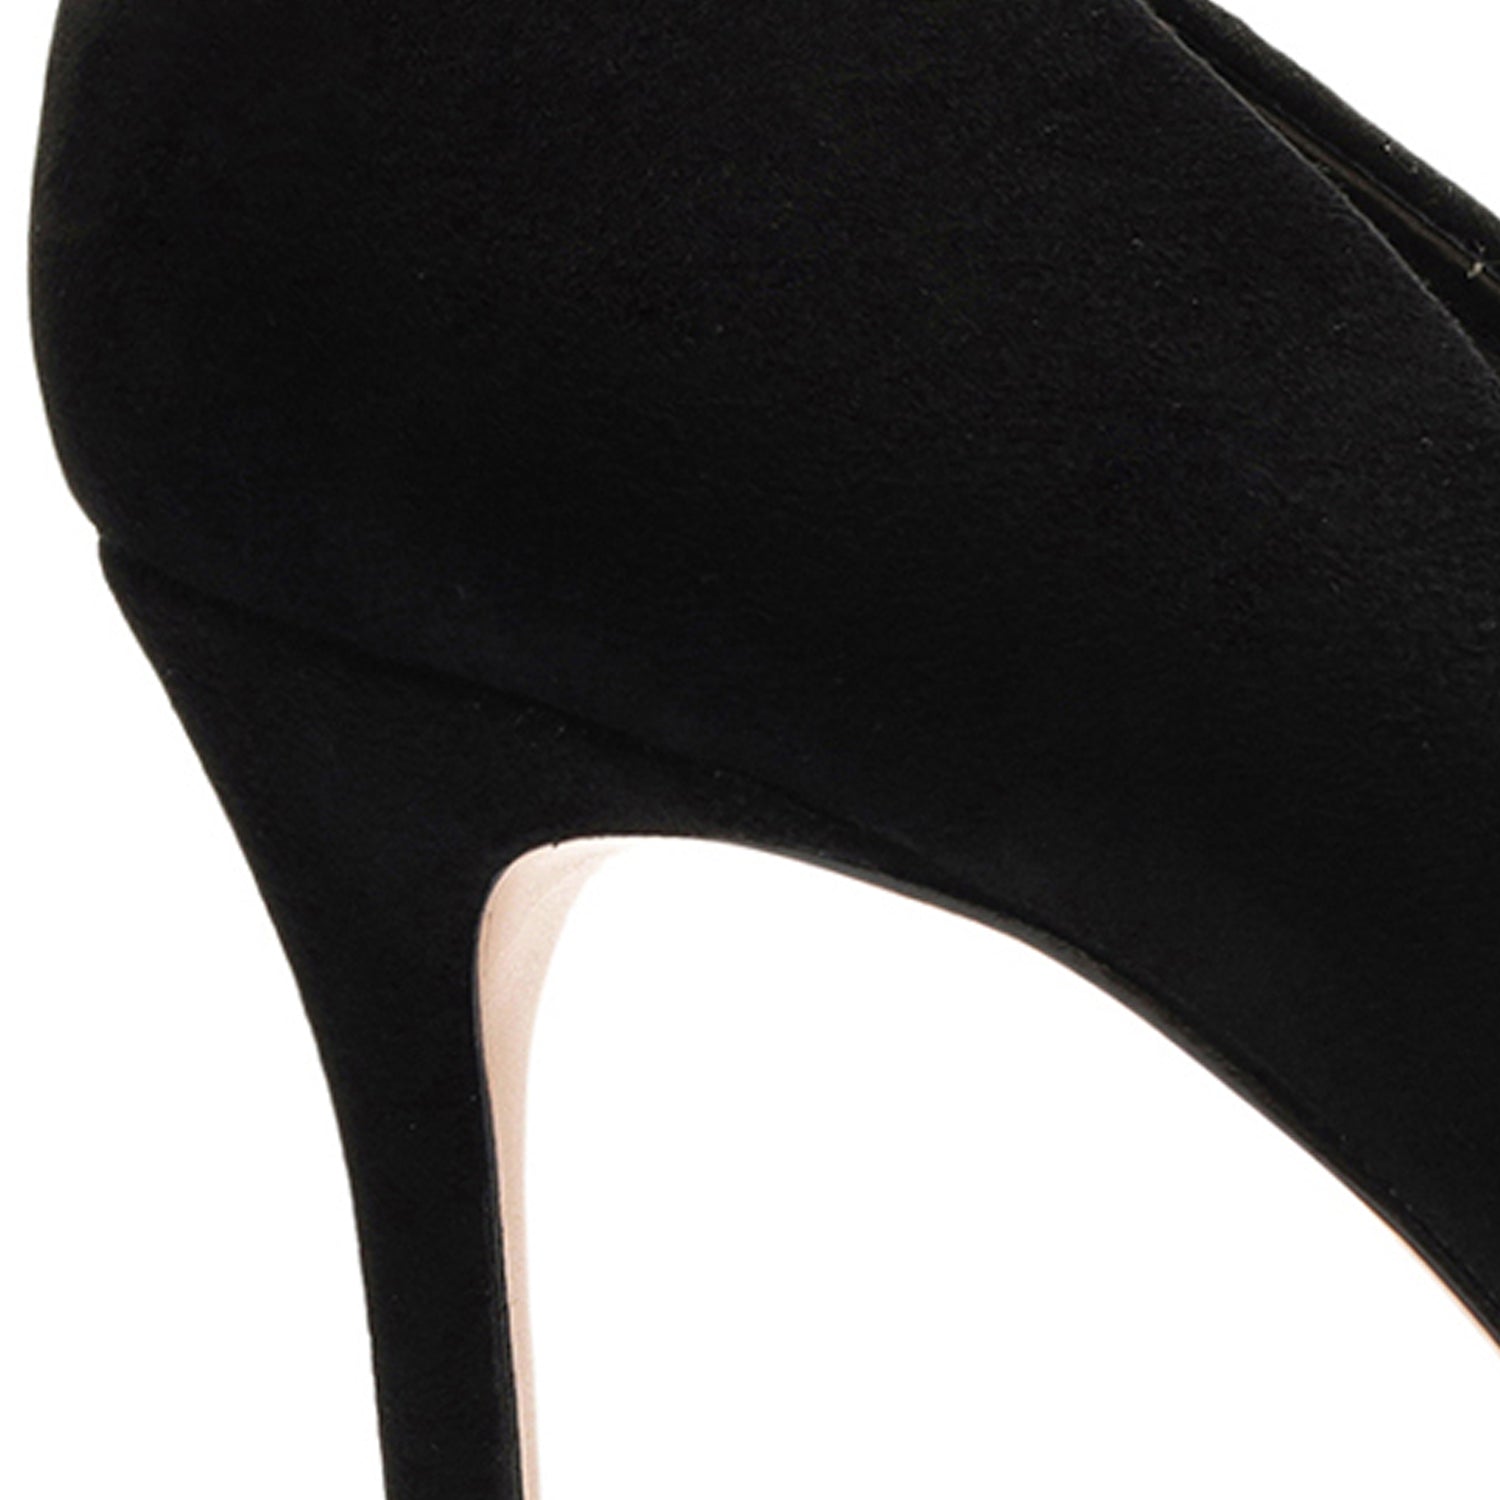 ICEY HEELS In Black Suede | Buy Women's HEELS Online | Novo Shoes